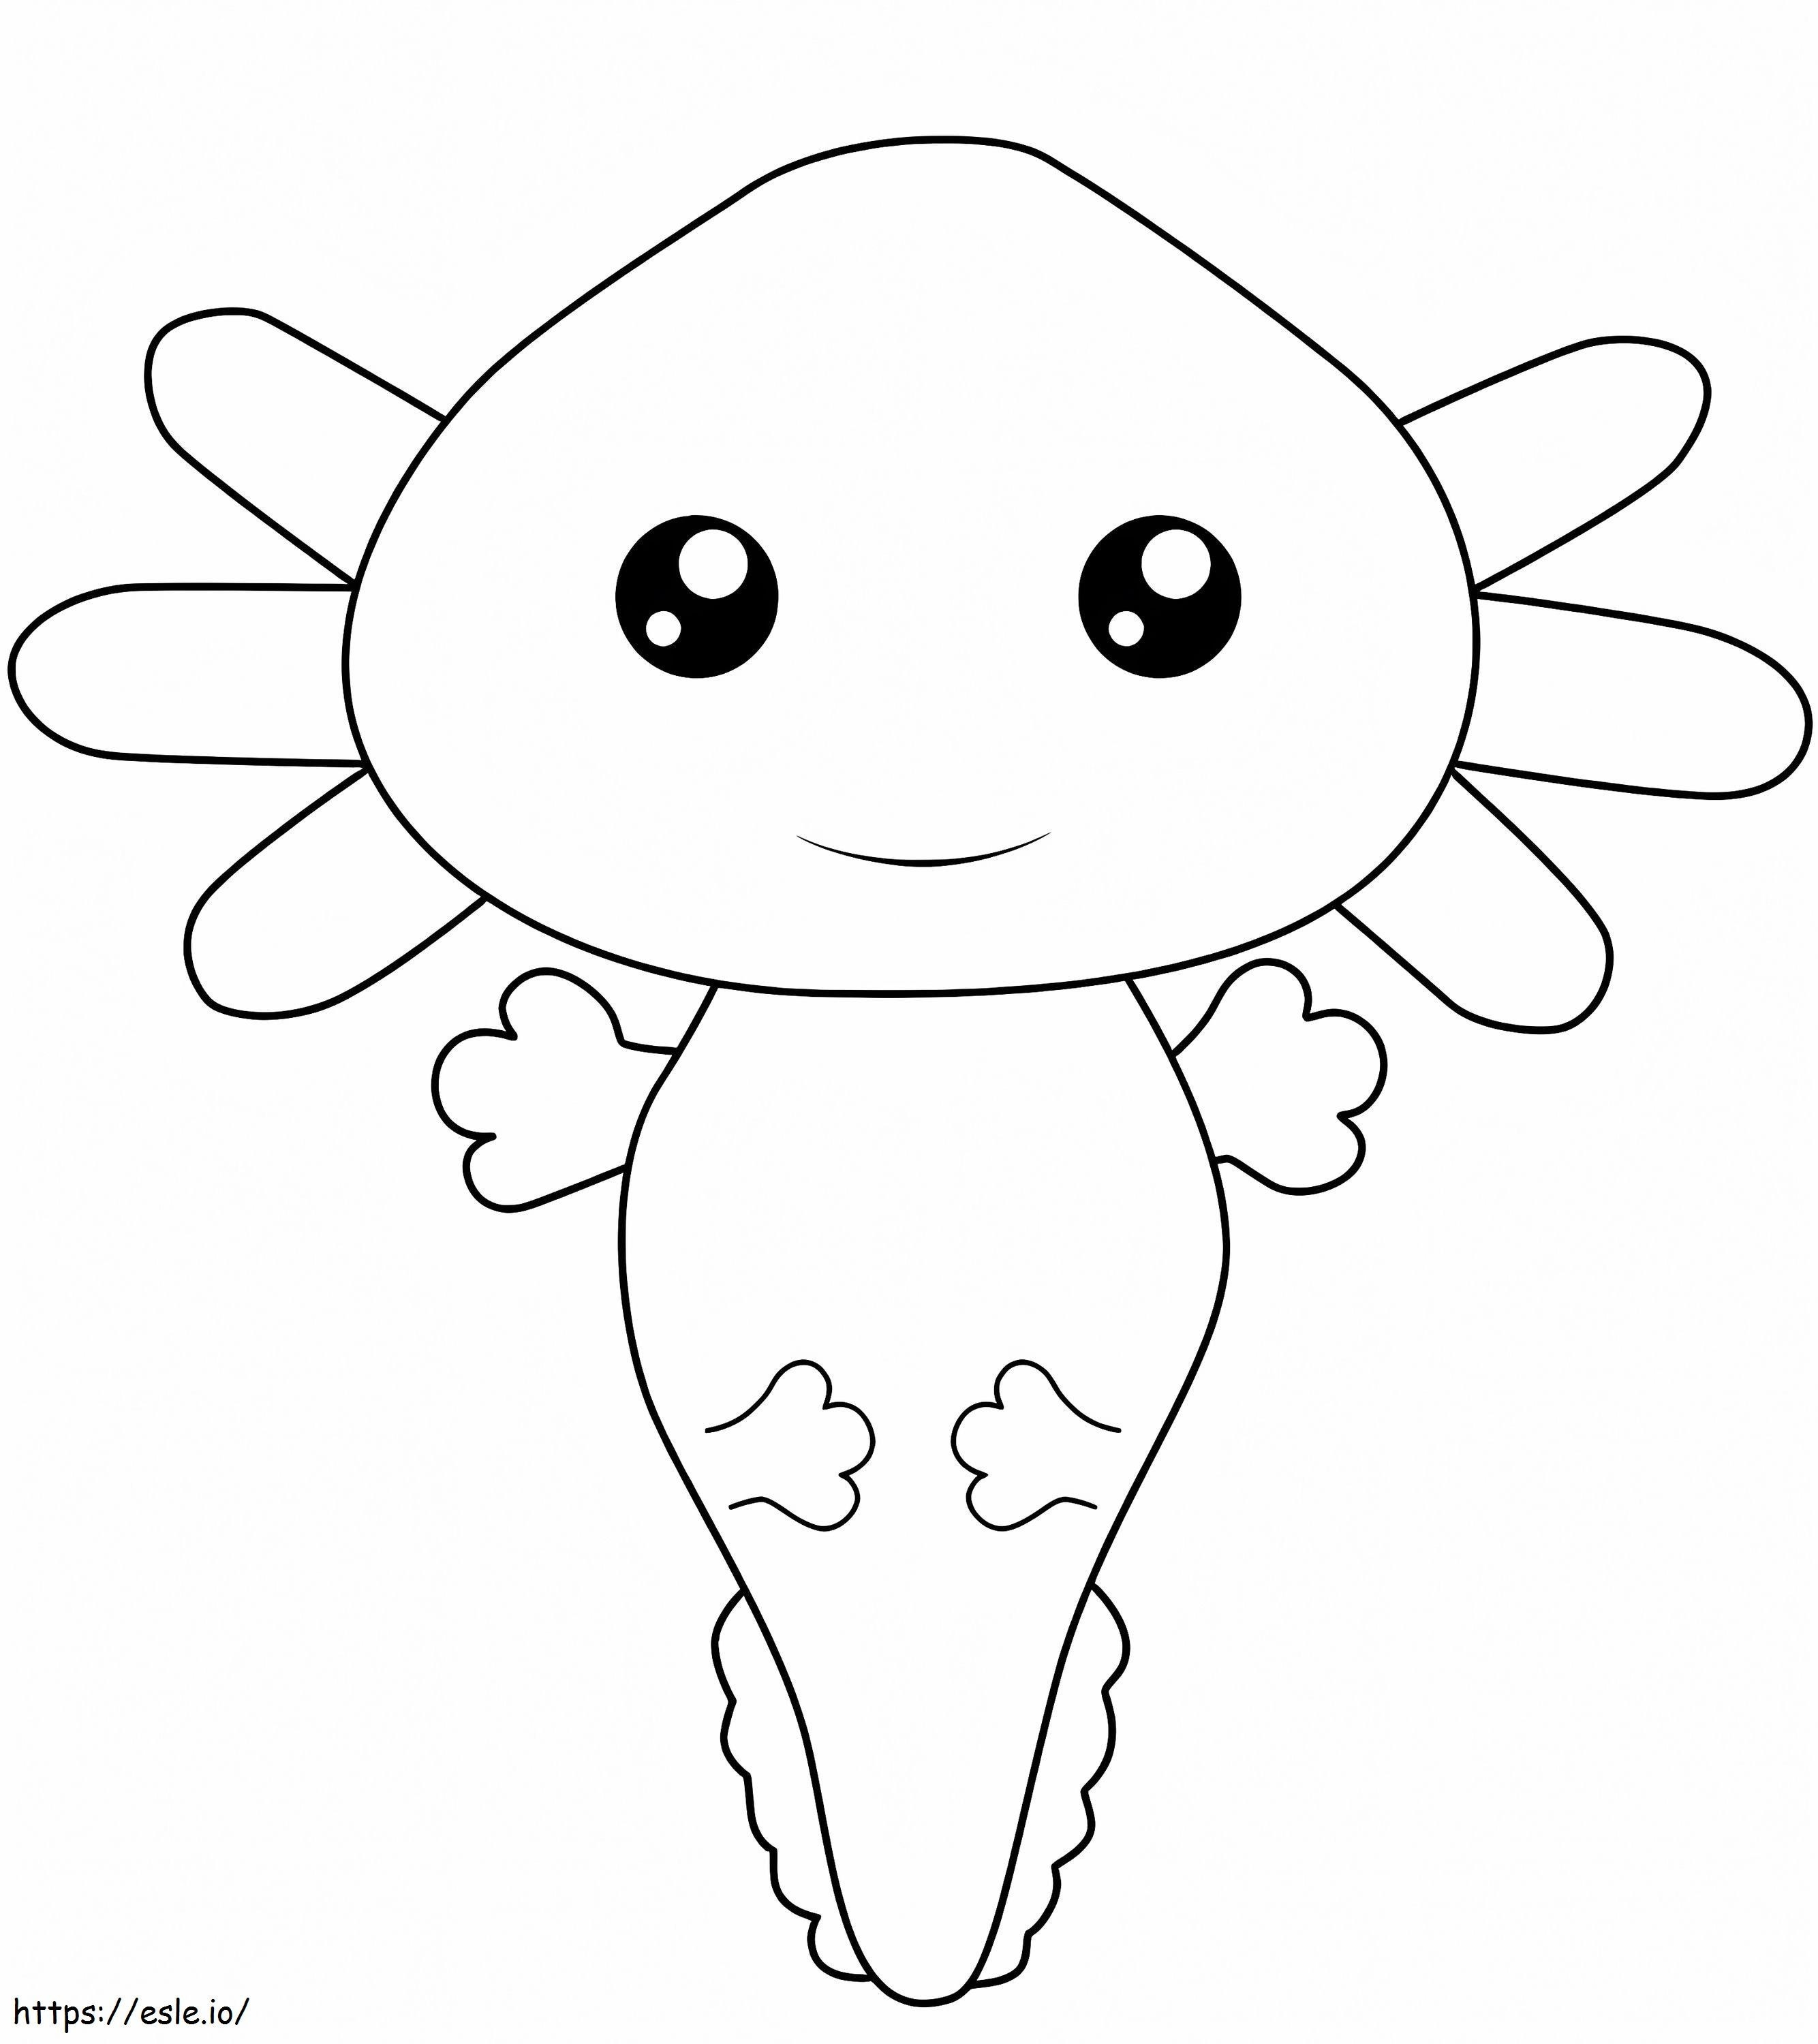 Coloriage Axolotl Kawaii à imprimer dessin